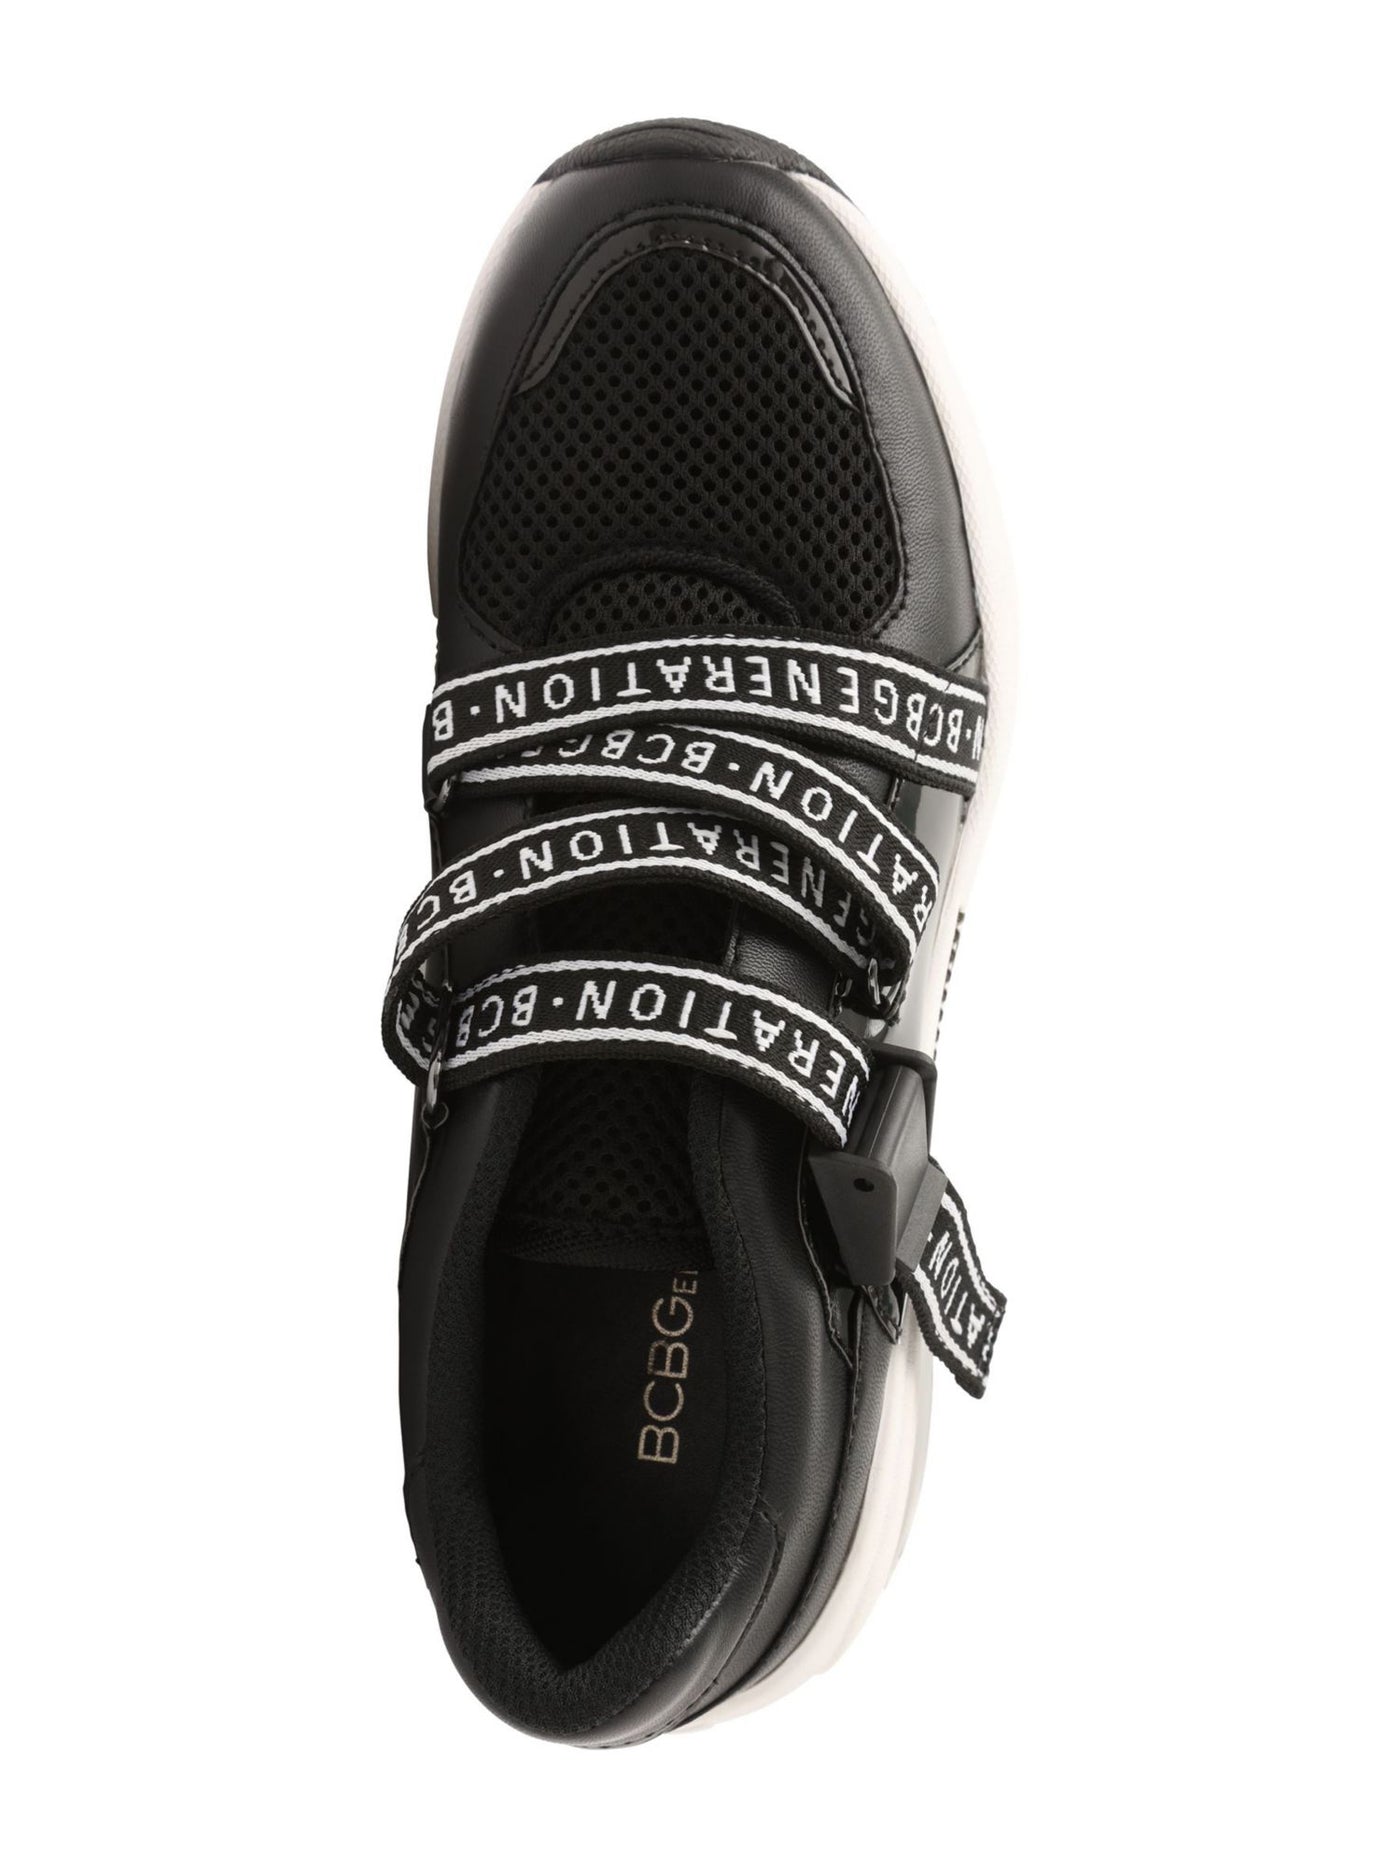 BCBGENERATION Womens Black 1" Platform Chain Hardware Logo Padded Willa Round Toe Wedge Slip On Athletic Training Shoes 8.5 M